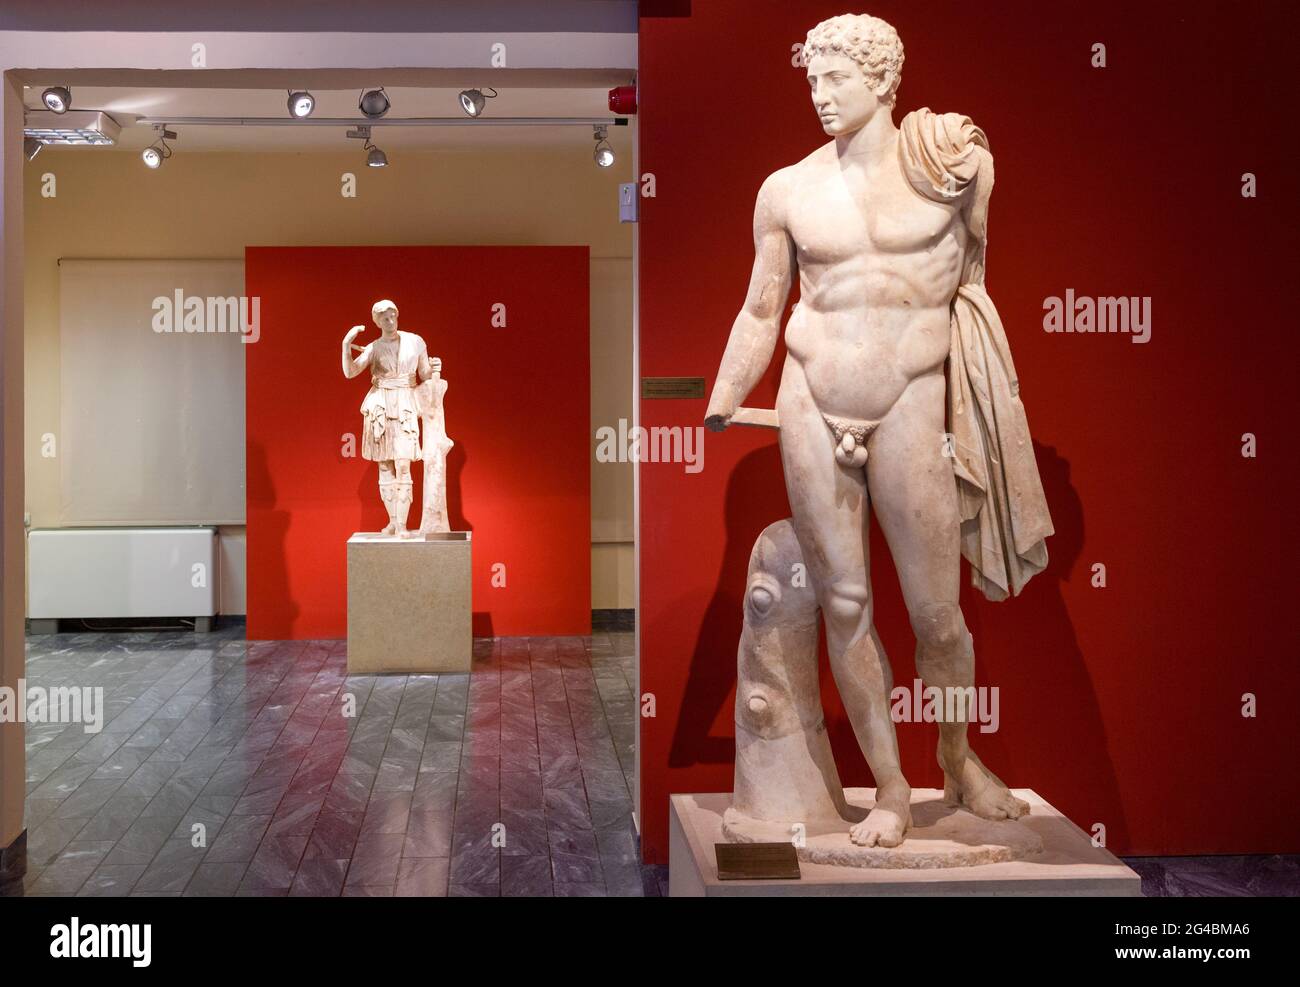 Statua di dio Hermes in primo piano, e sullo sfondo la statua dell'Artemide, dea della caccia, al museo archeologico di Messini, Grecia. Foto Stock